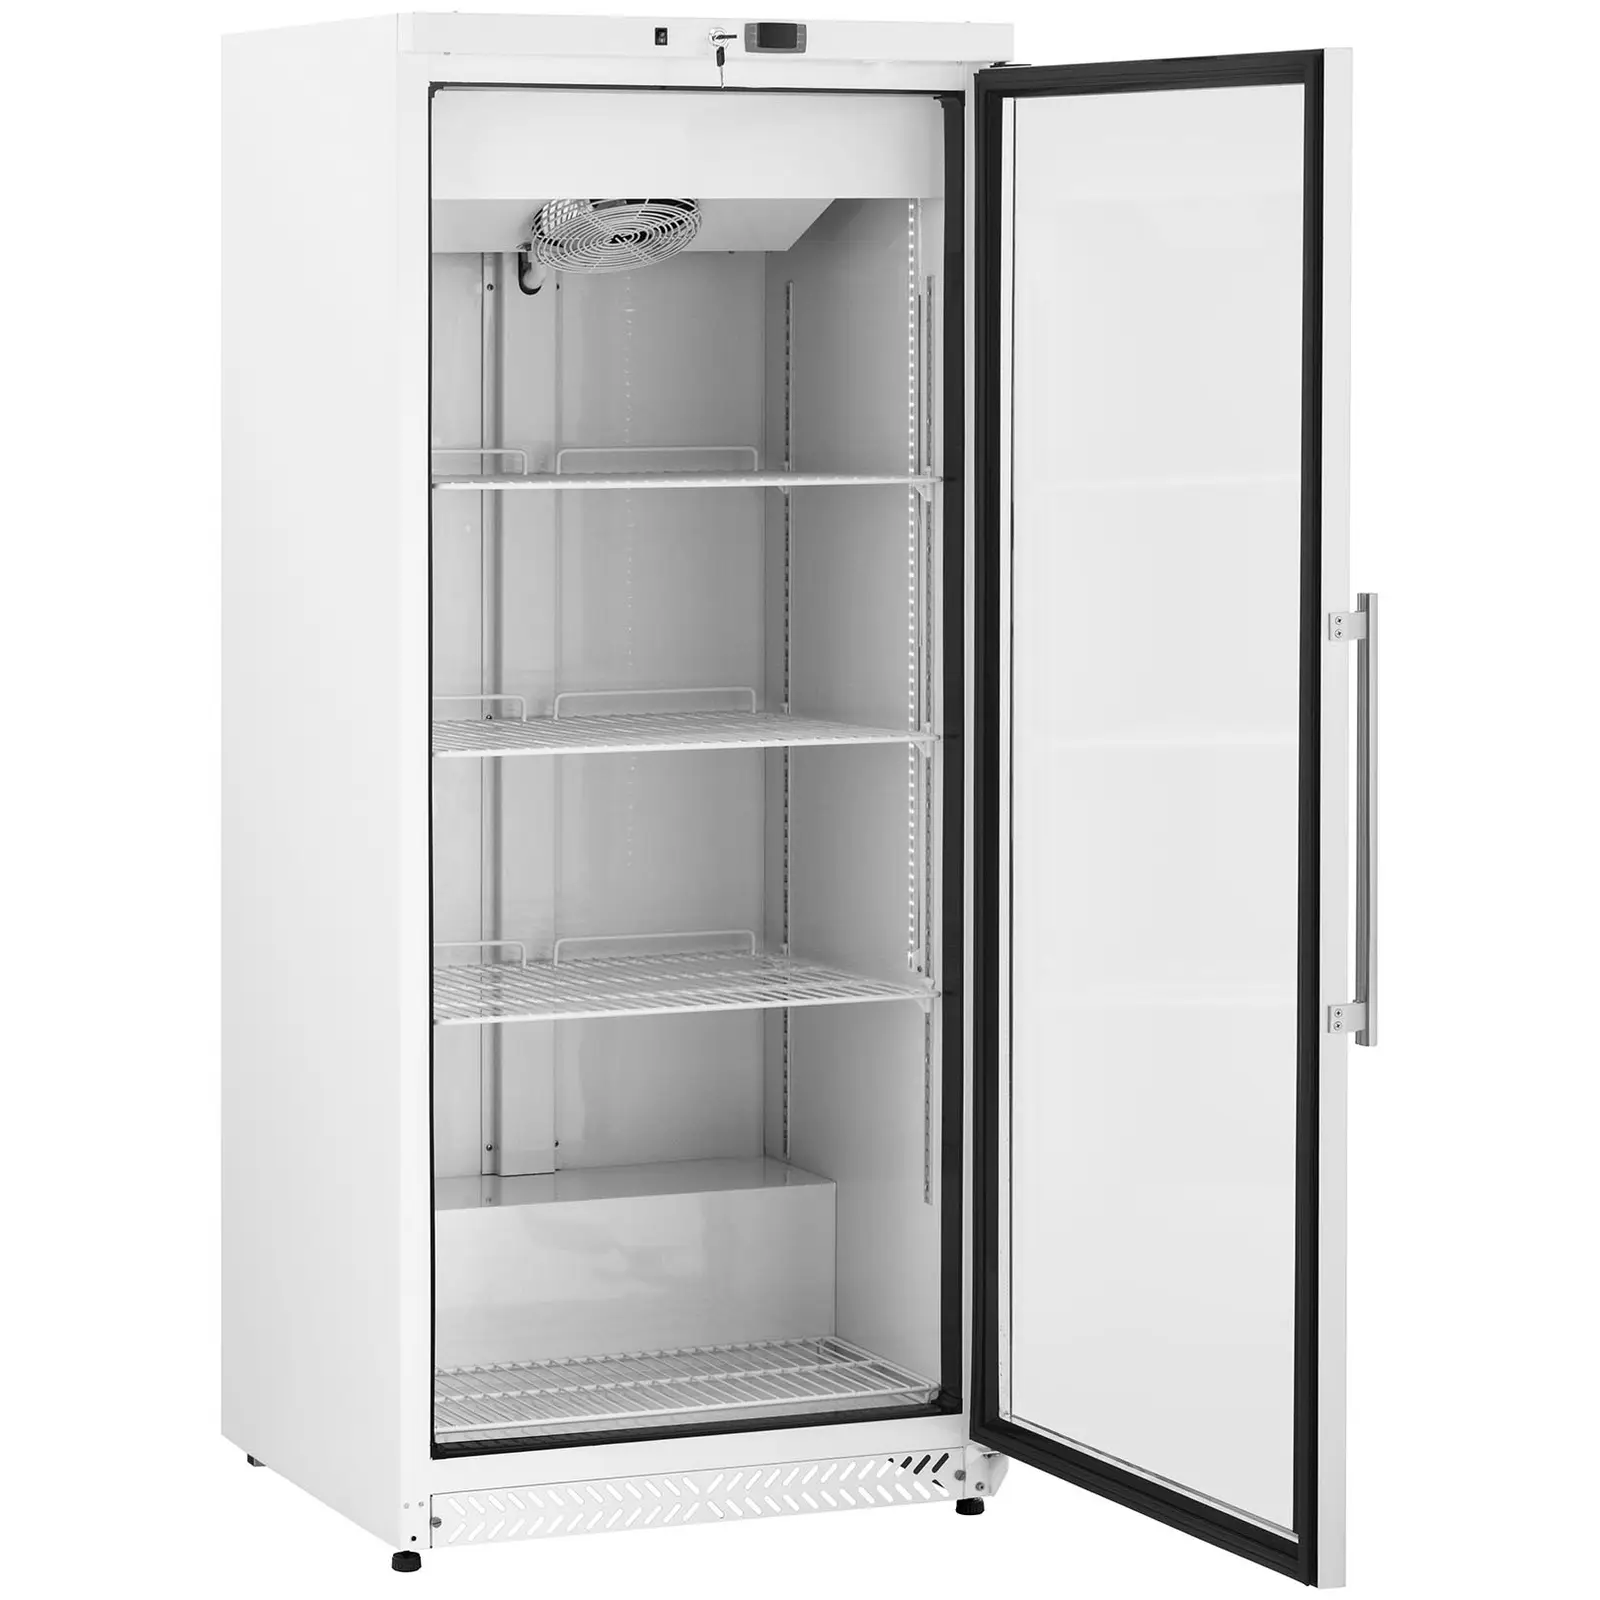 Refrigerador para gastronomía - 590 L - Royal Catering - con puerta de vidrio